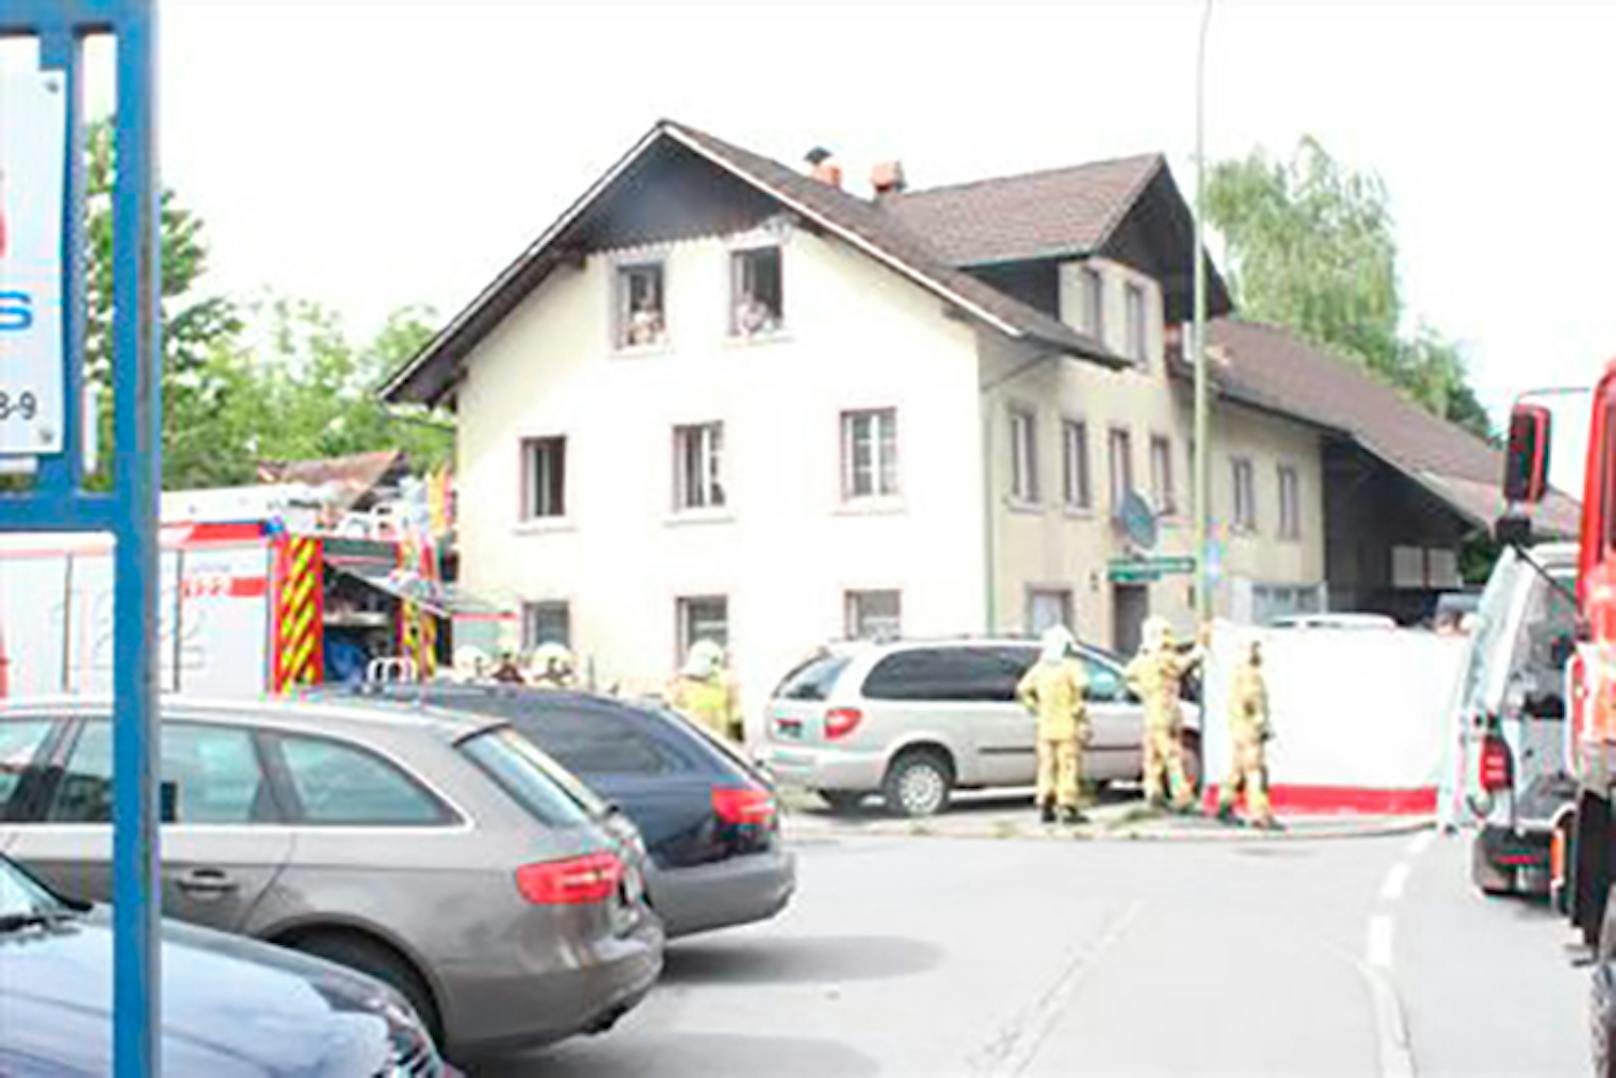 Die Freiwillige Feuerwehr Lustenau löschte das Feuer, während der Polizeibeamte den Dreijährigen reanimierte.